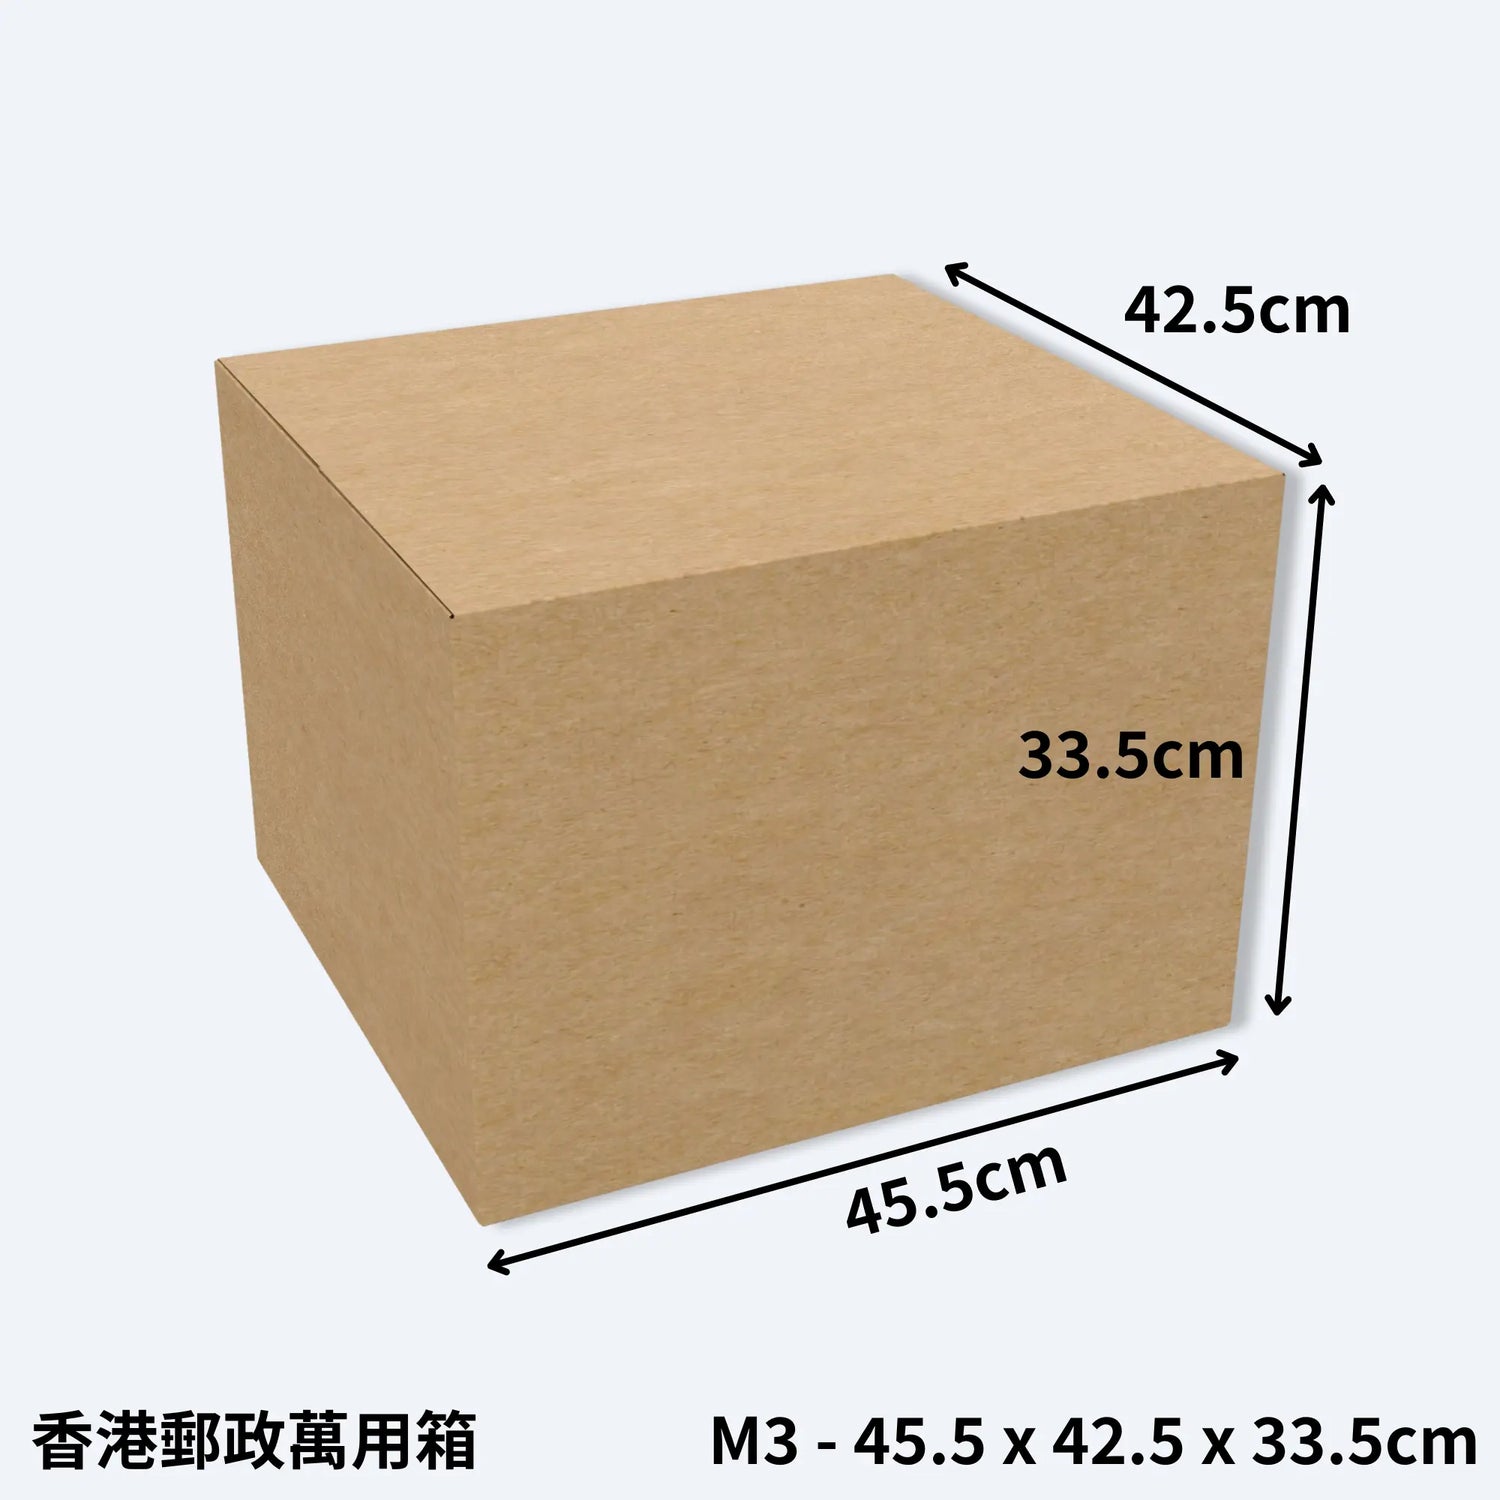 一個中型的香港郵政專用紙箱，型號M3萬用箱，尺寸為45.5cm x 42.5cm x 33.5cm，展示了紙箱的長寬高比例。